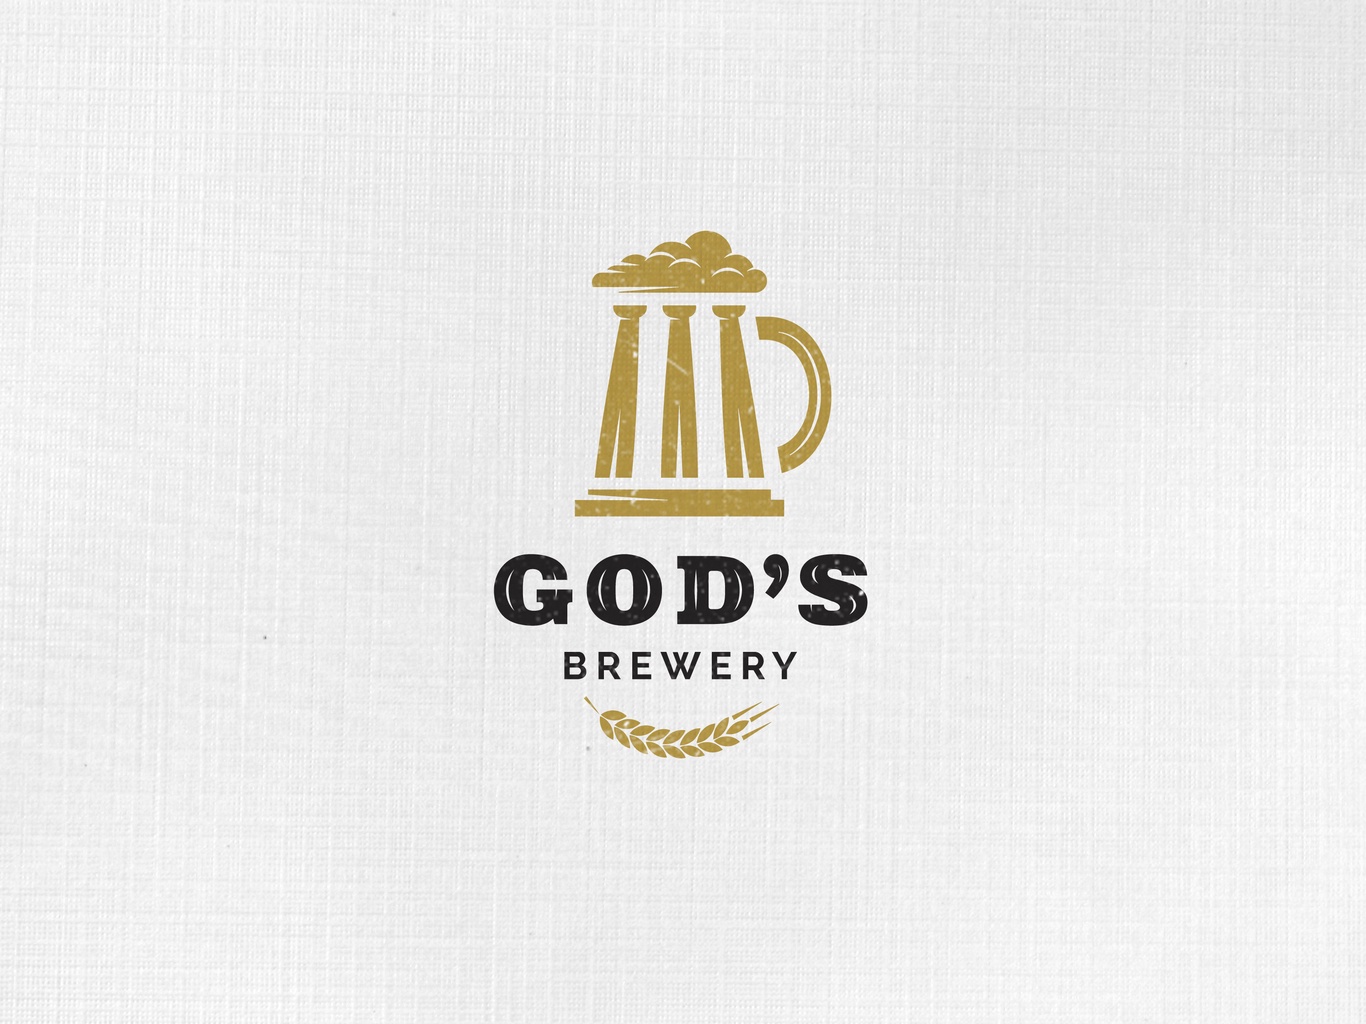 God's beer